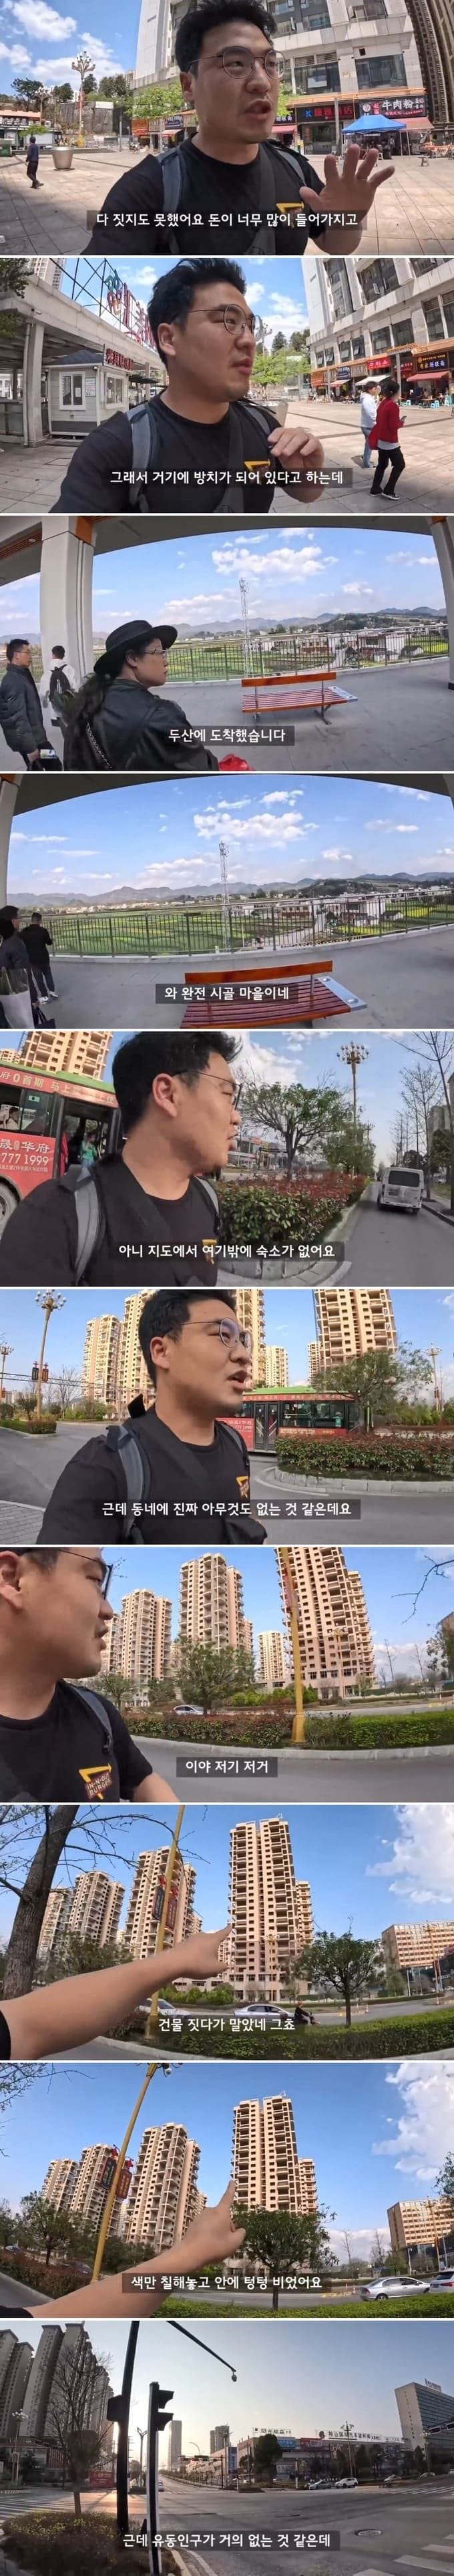 파산한 중국 도시에 방문한 유튜버.jpg